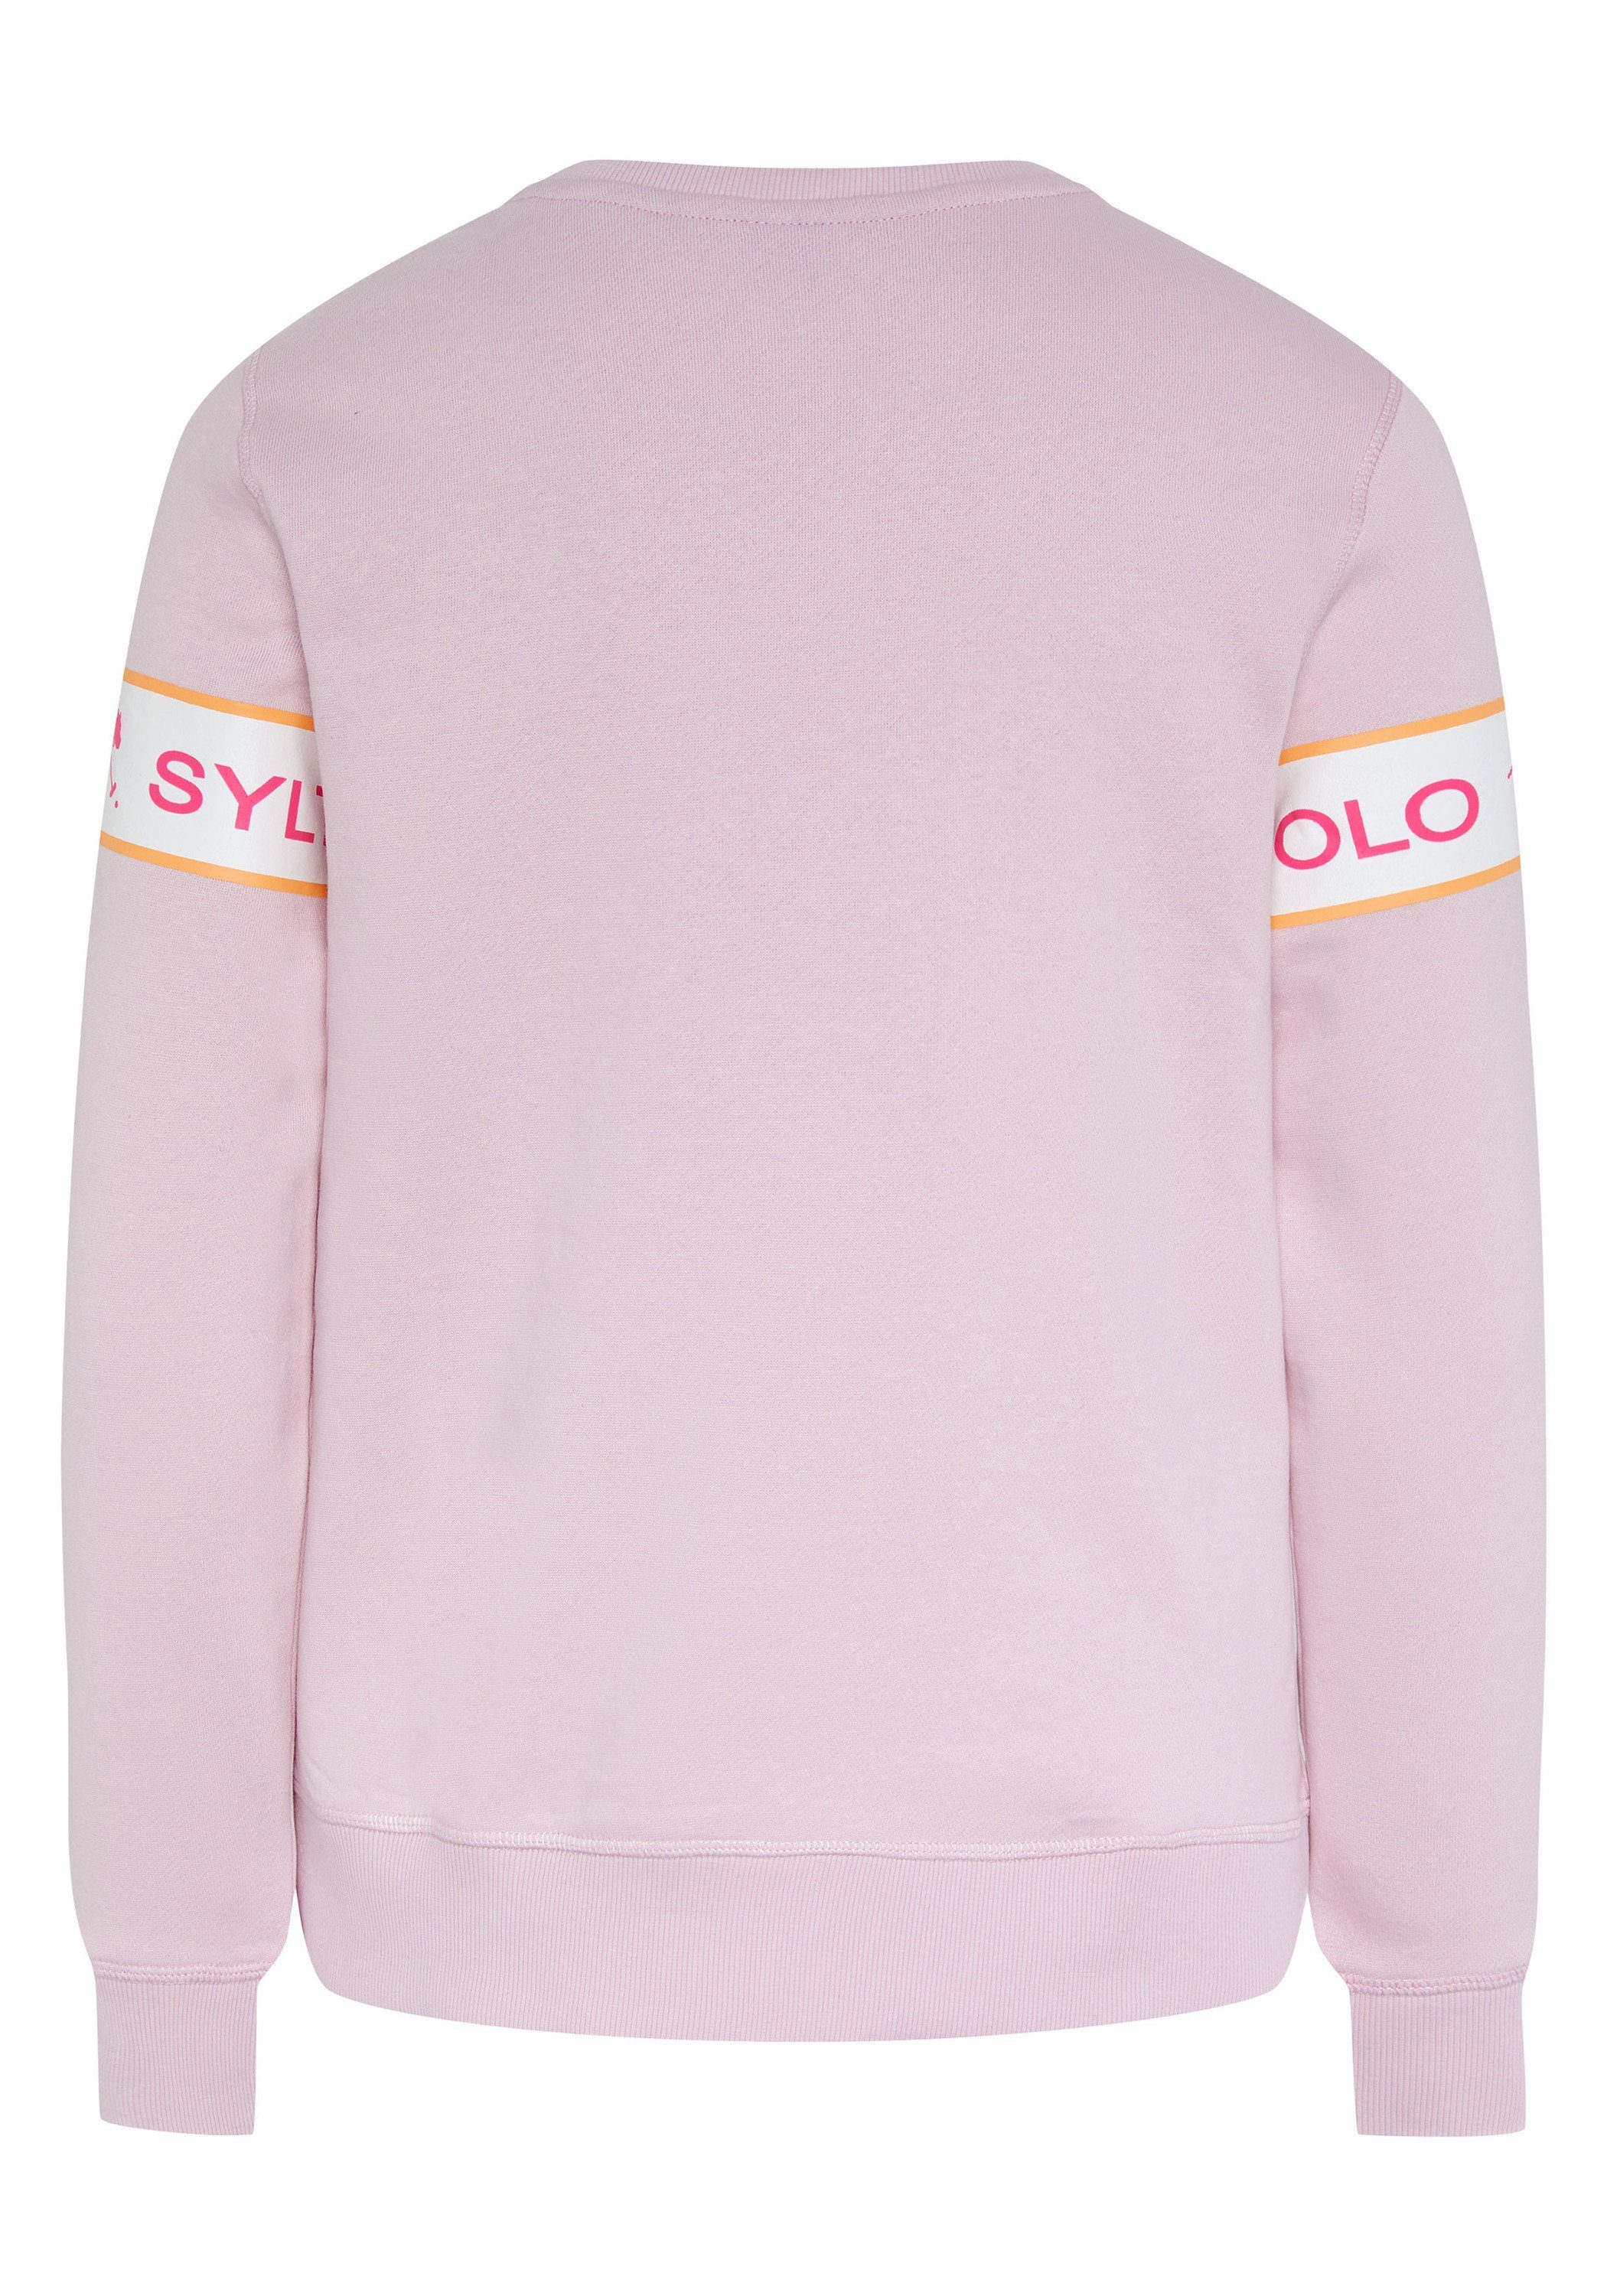 Polo Sylt eingearbeitetem Lady Sweatshirt 13-2806 Logo-Kontraststreifen Pink mit